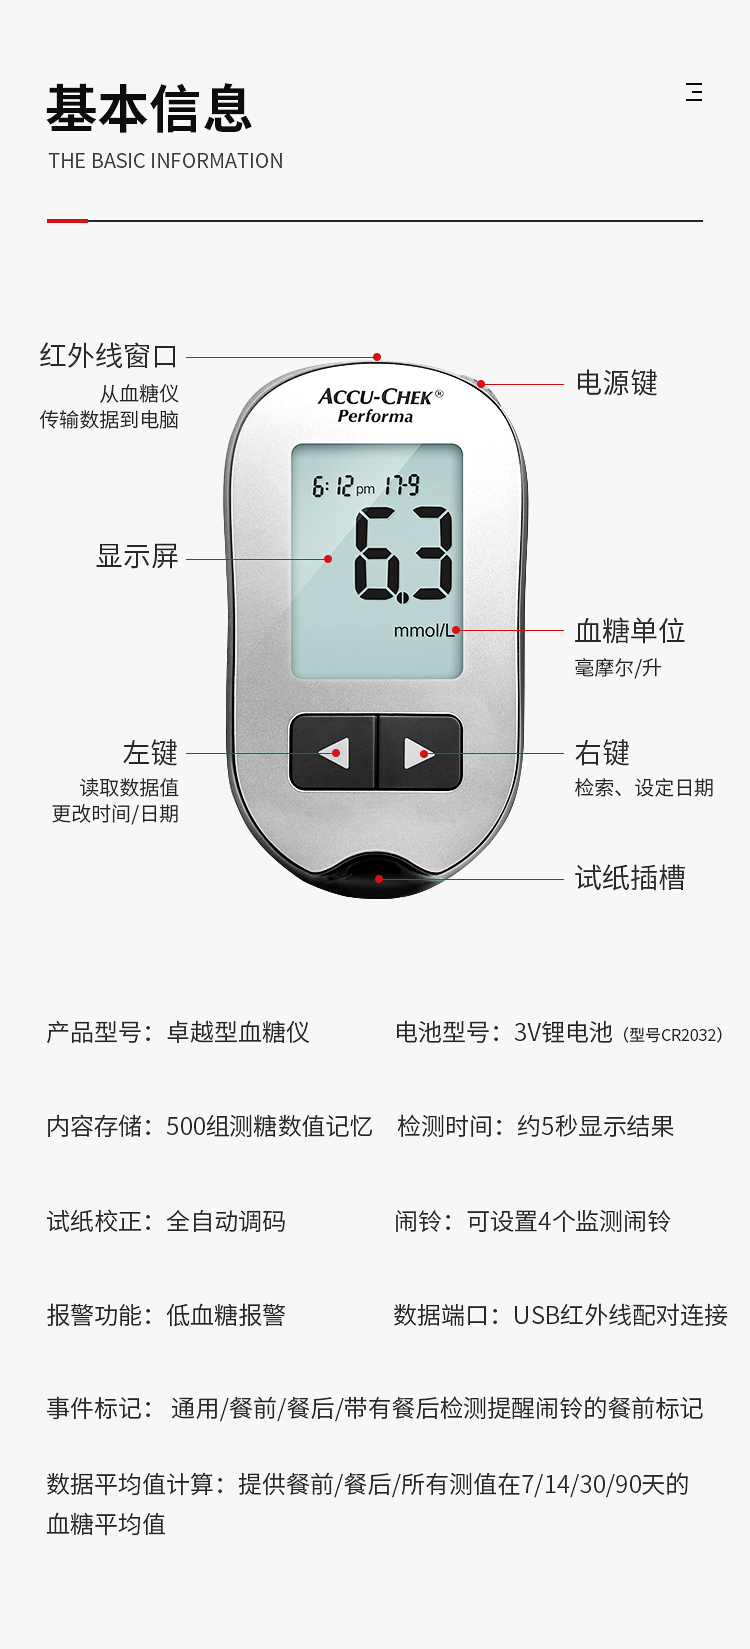 血糖仪(卓越金采型)包装单位盒规格型号1台生产企业罗氏诊断产品(上海